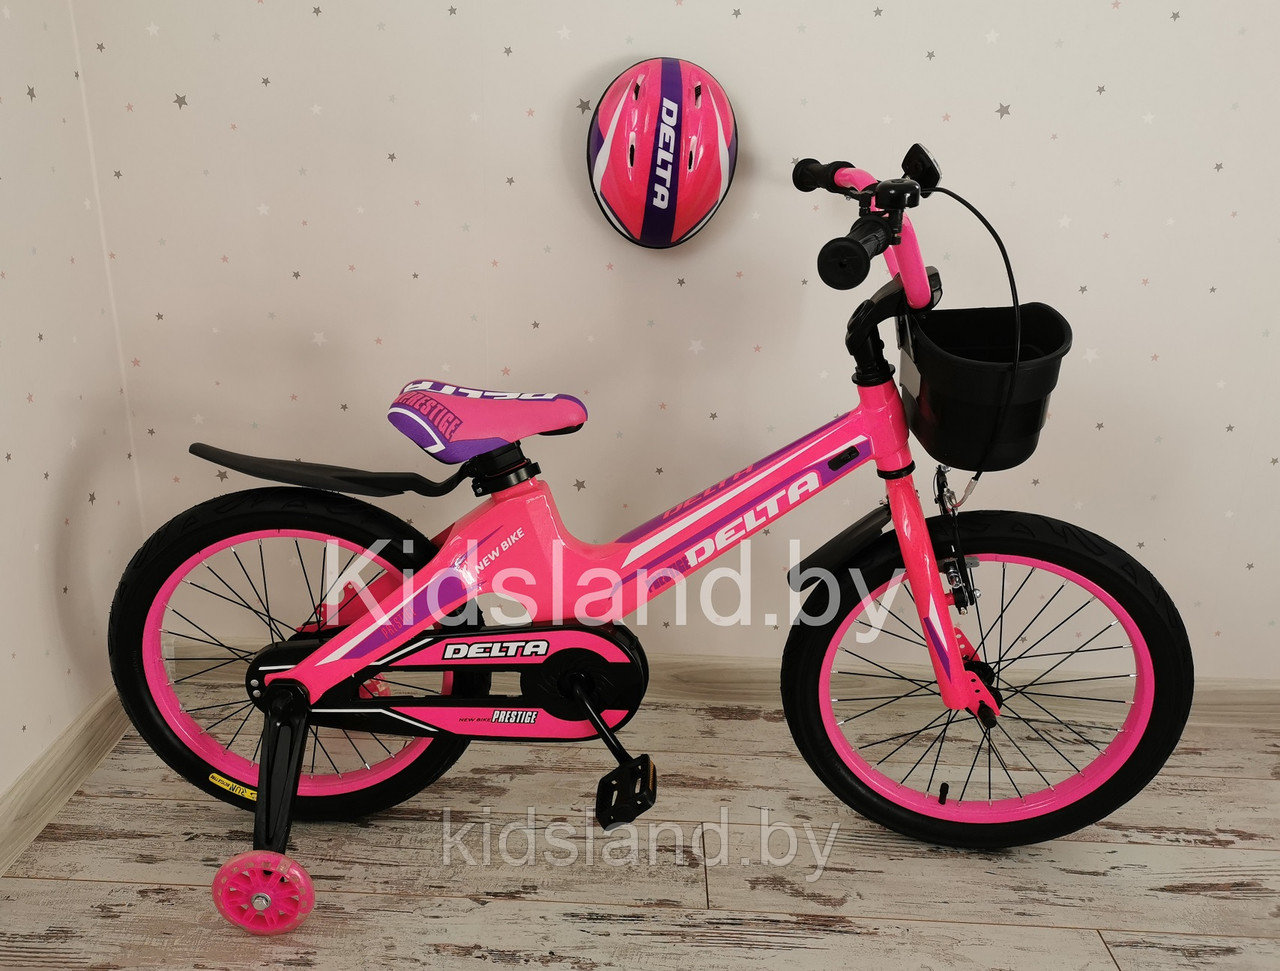 Детский облегченный велосипед Delta Prestige S 18'' + шлем (розовый), фото 1